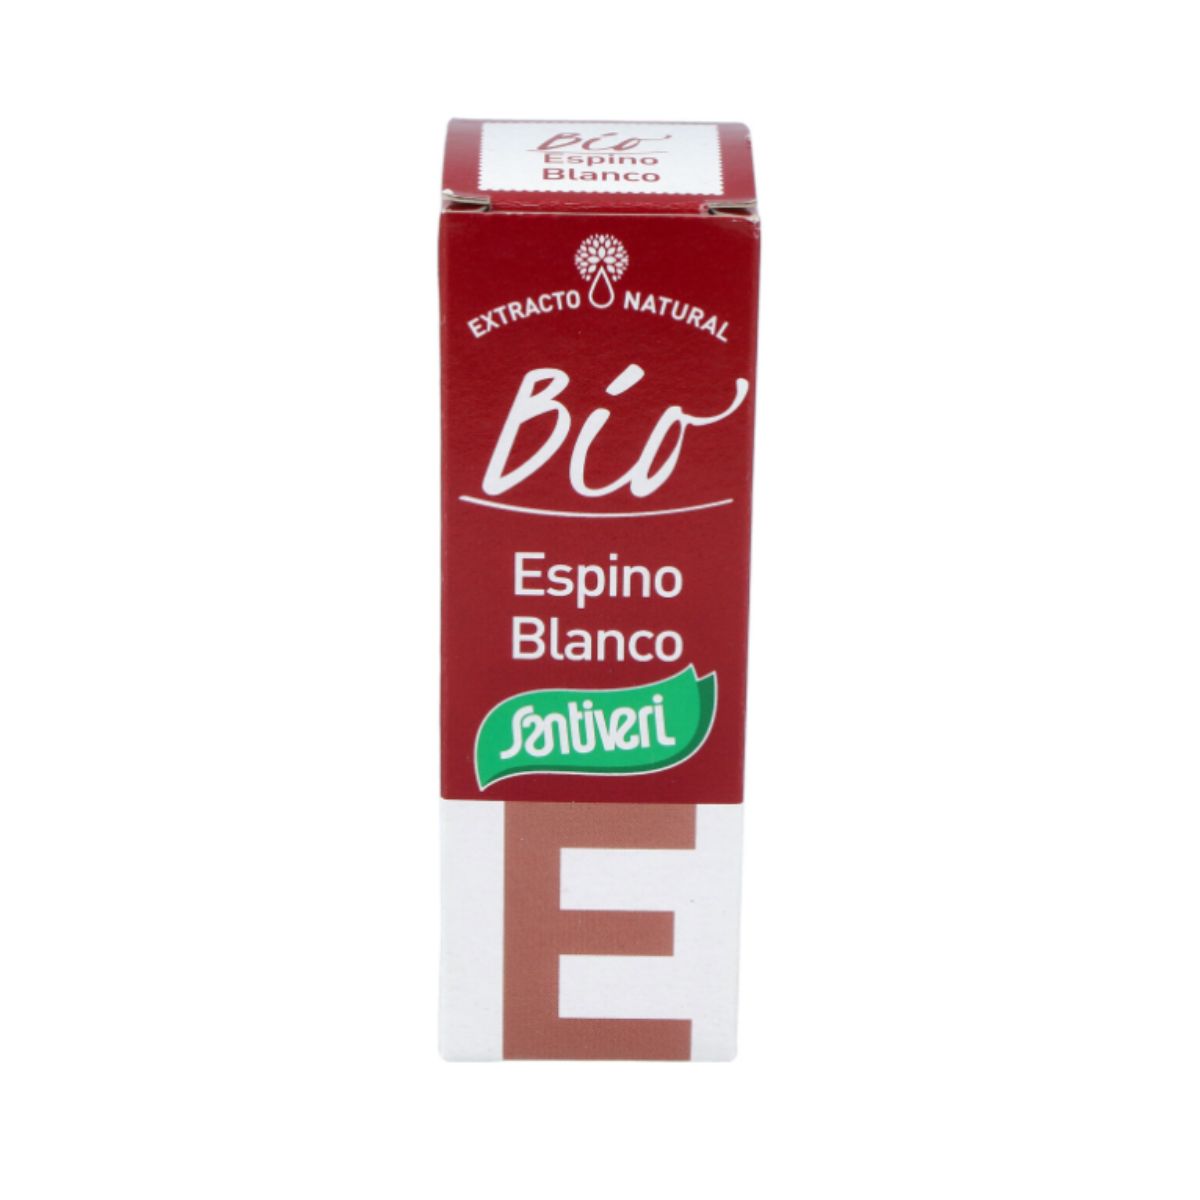 Extracto de Espino Blanco 50 ml BIO